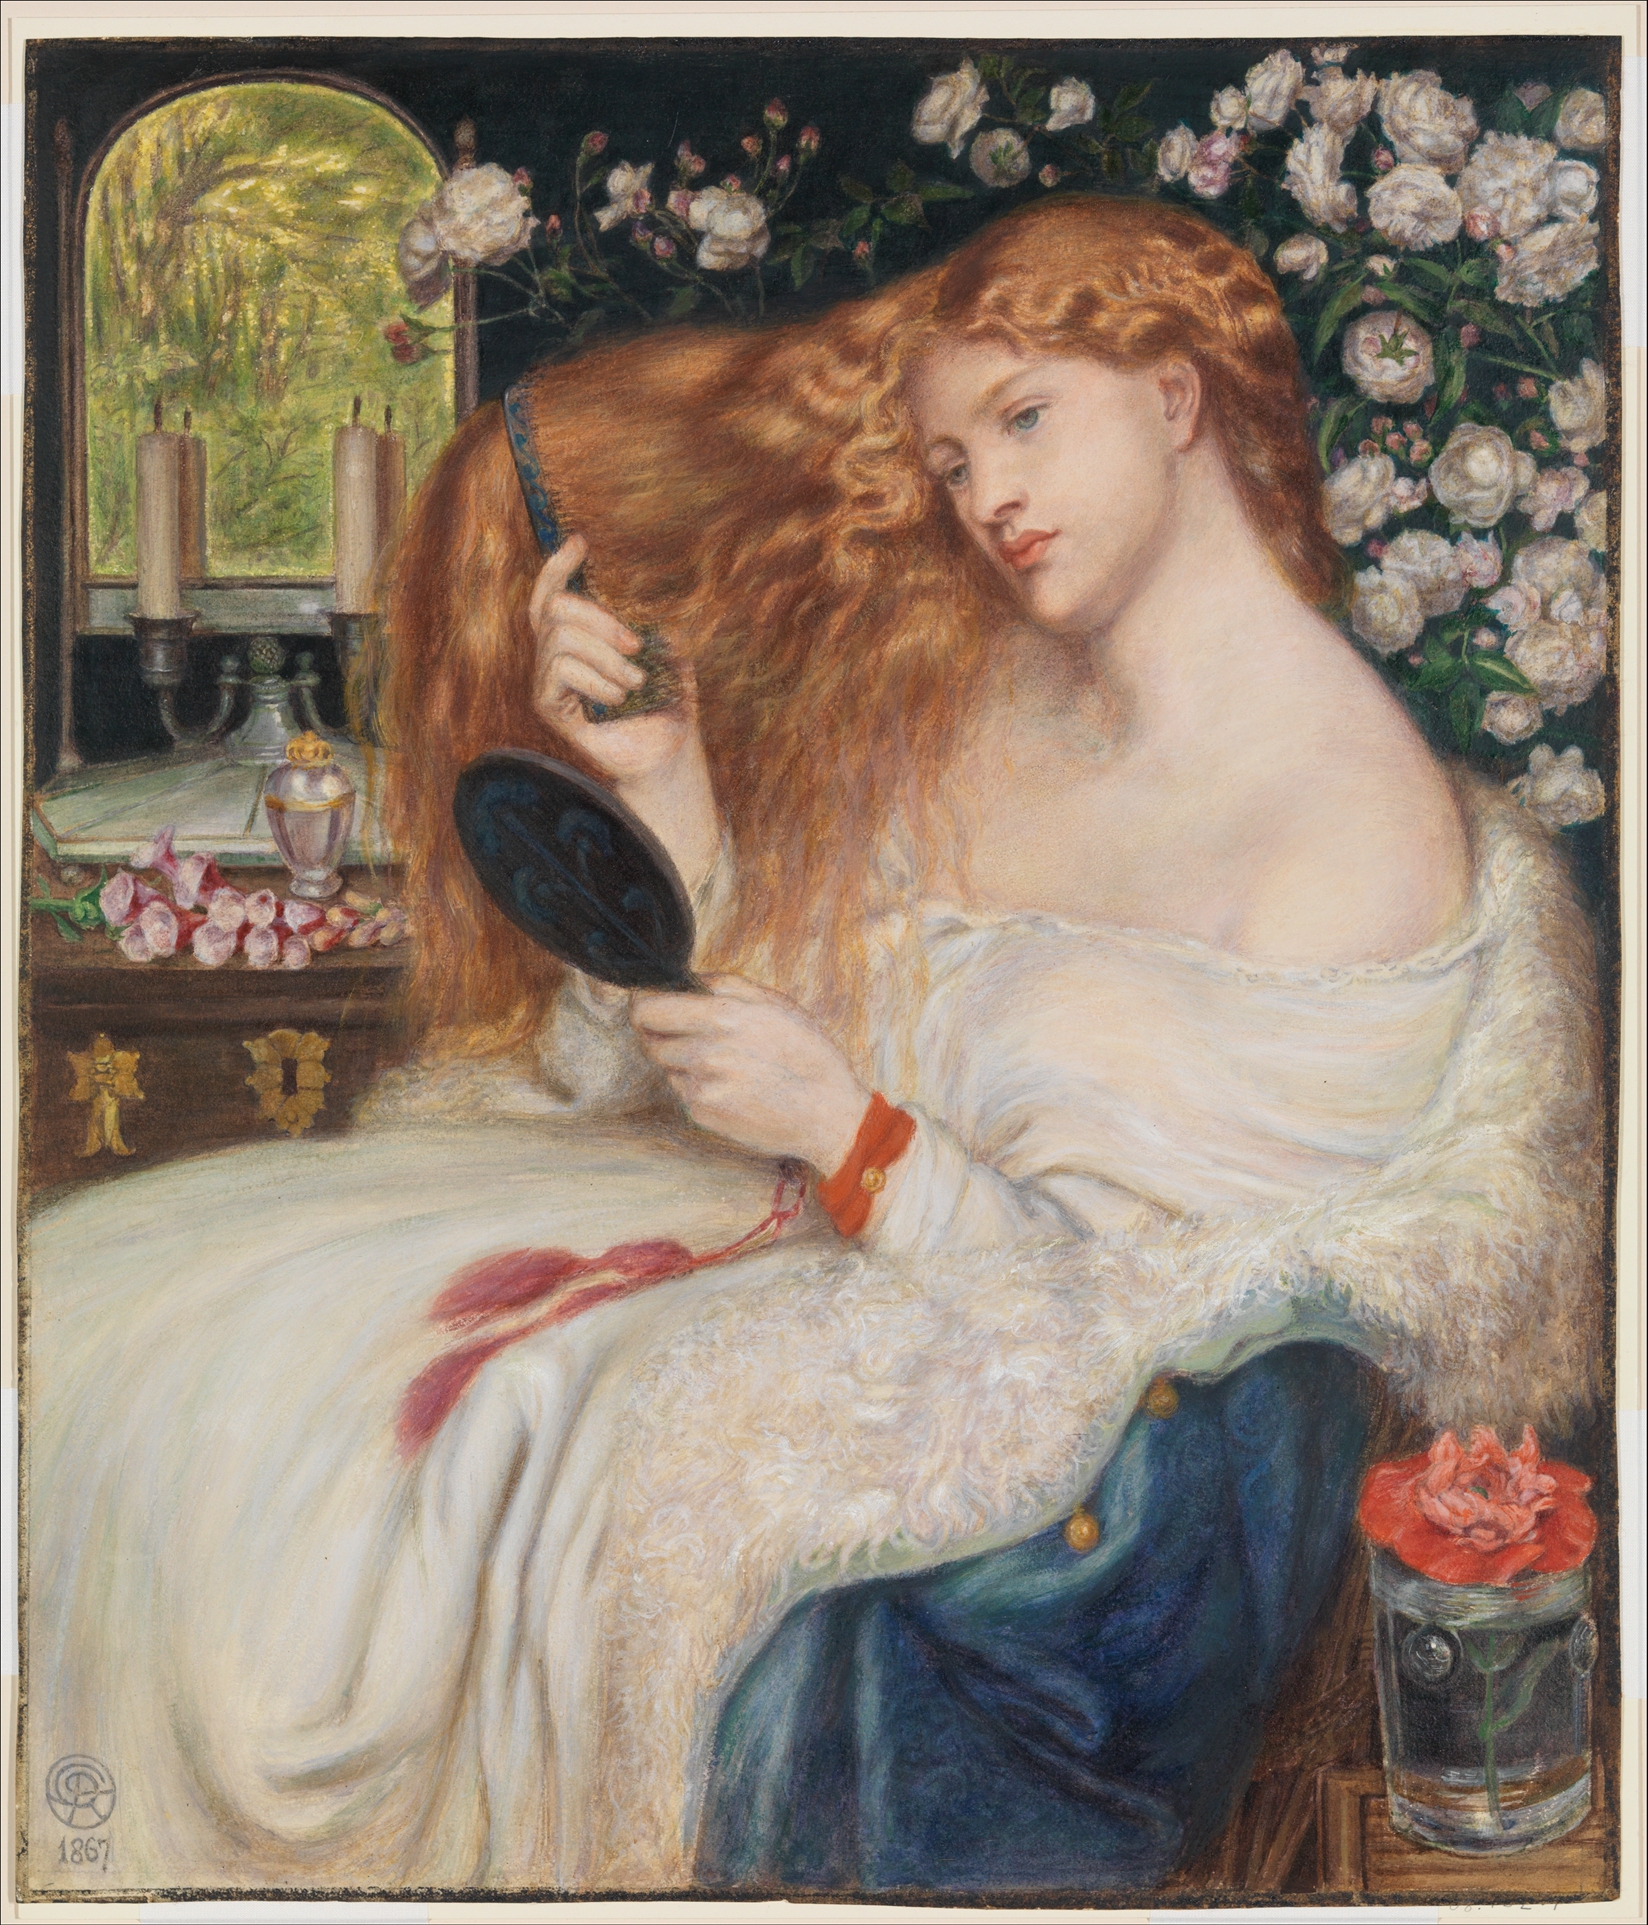 Леди Лилит by Данте Габриэль Россетти - 1867 г. - 51,3 х 44 см 